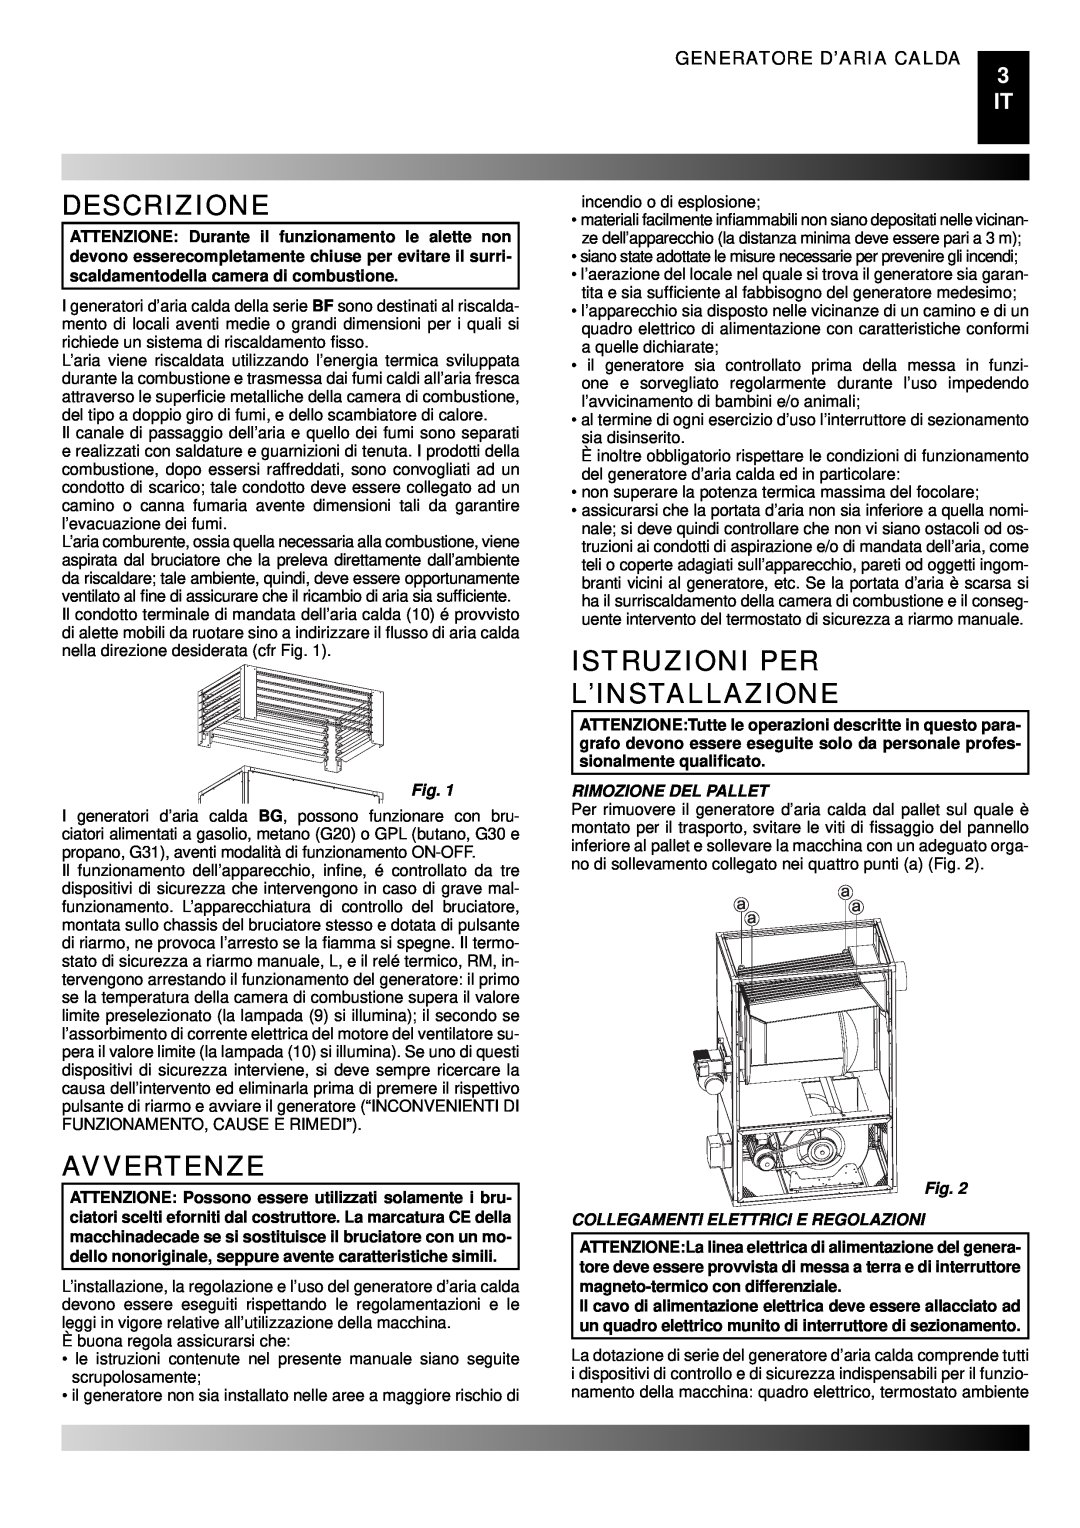 Master Lock BG 100 Descrizione, Avvertenze, Istruzioni Per L’Installazione, Generatore D’Aria Calda, Rimozione Del Pallet 